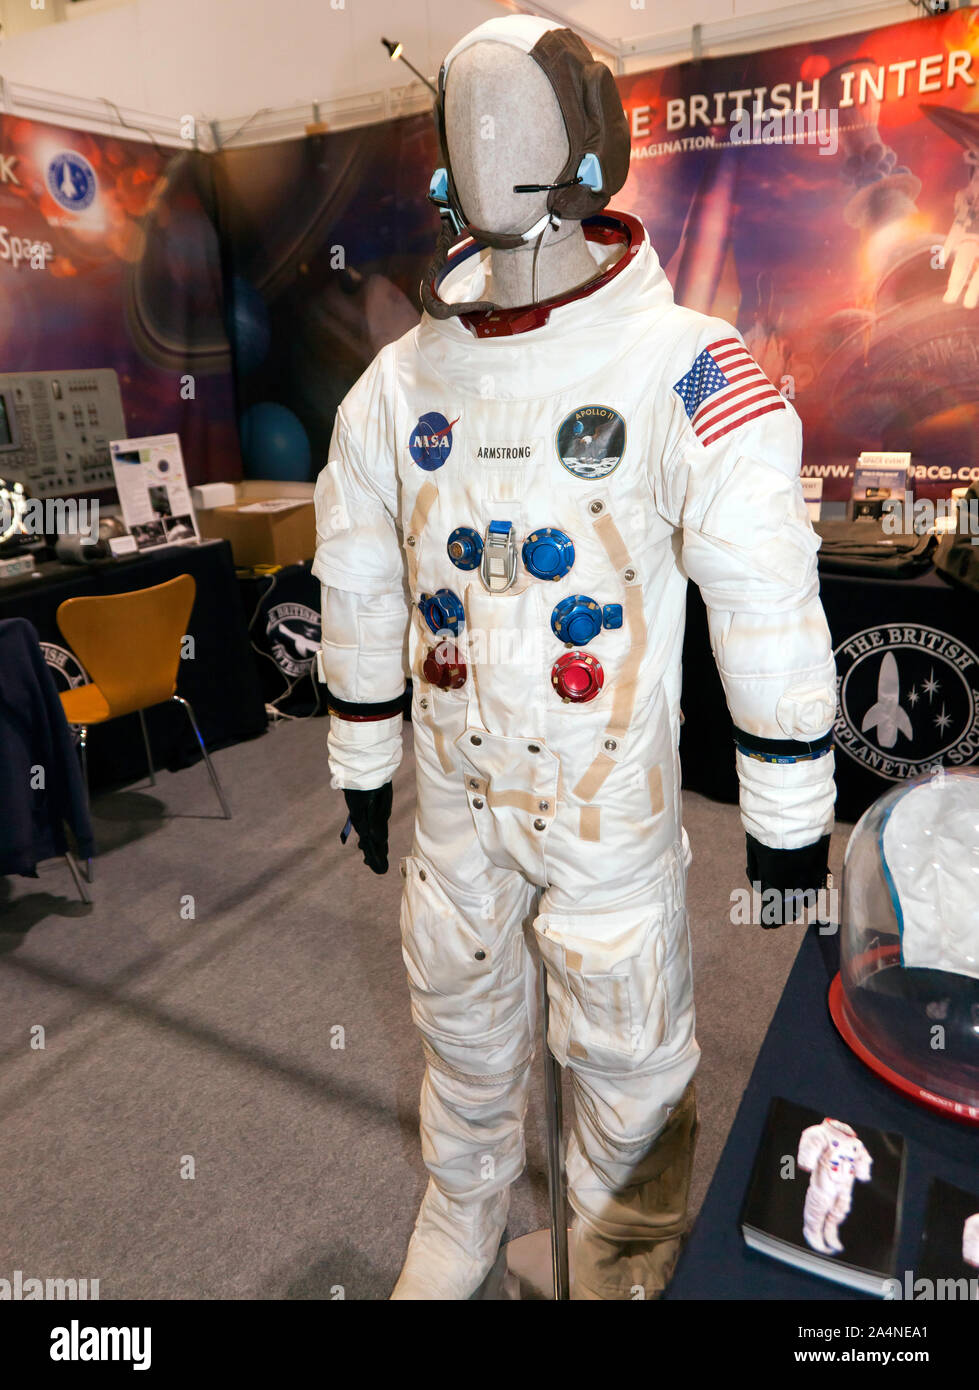 Una réplica de Niel Armstrong usó traje espacial sobre el aterrizaje en la Luna la misión Apolo 11, muestra en el stand de la sociedad interplanetaria británica, en New Scientist Live 2019 Foto de stock